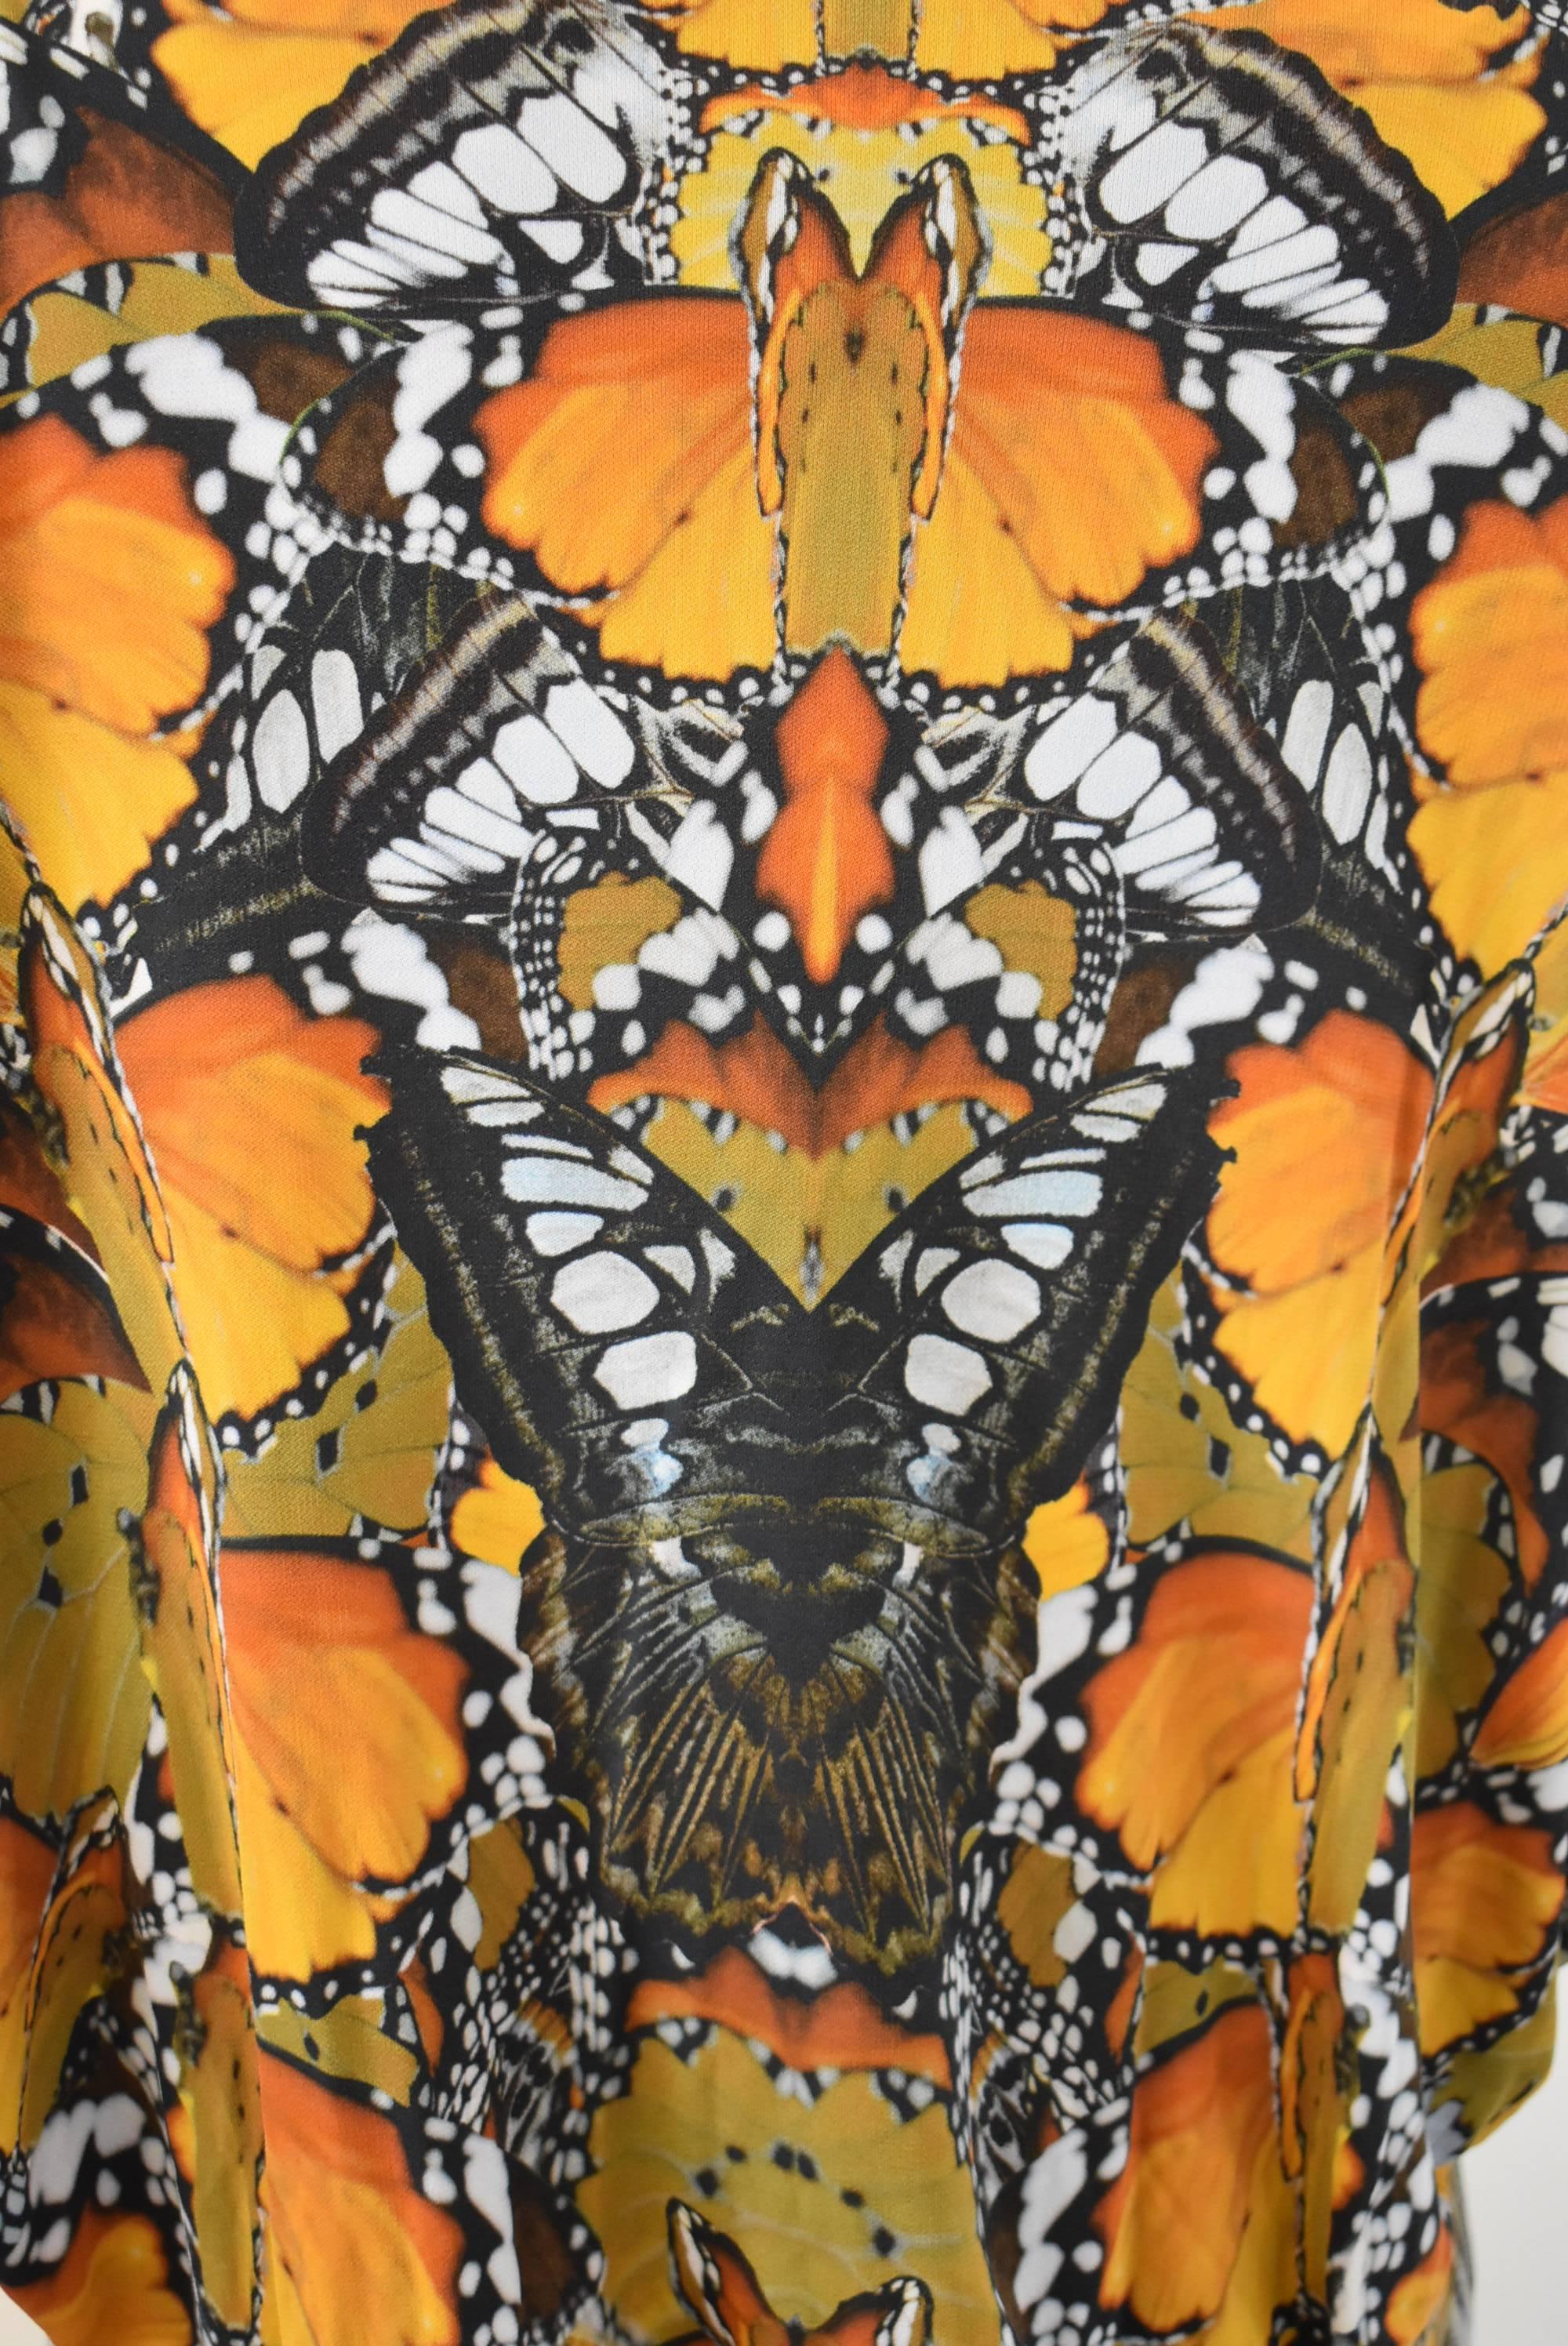 Brown Alexander McQueen Butterfly Print Dress S/S 2011